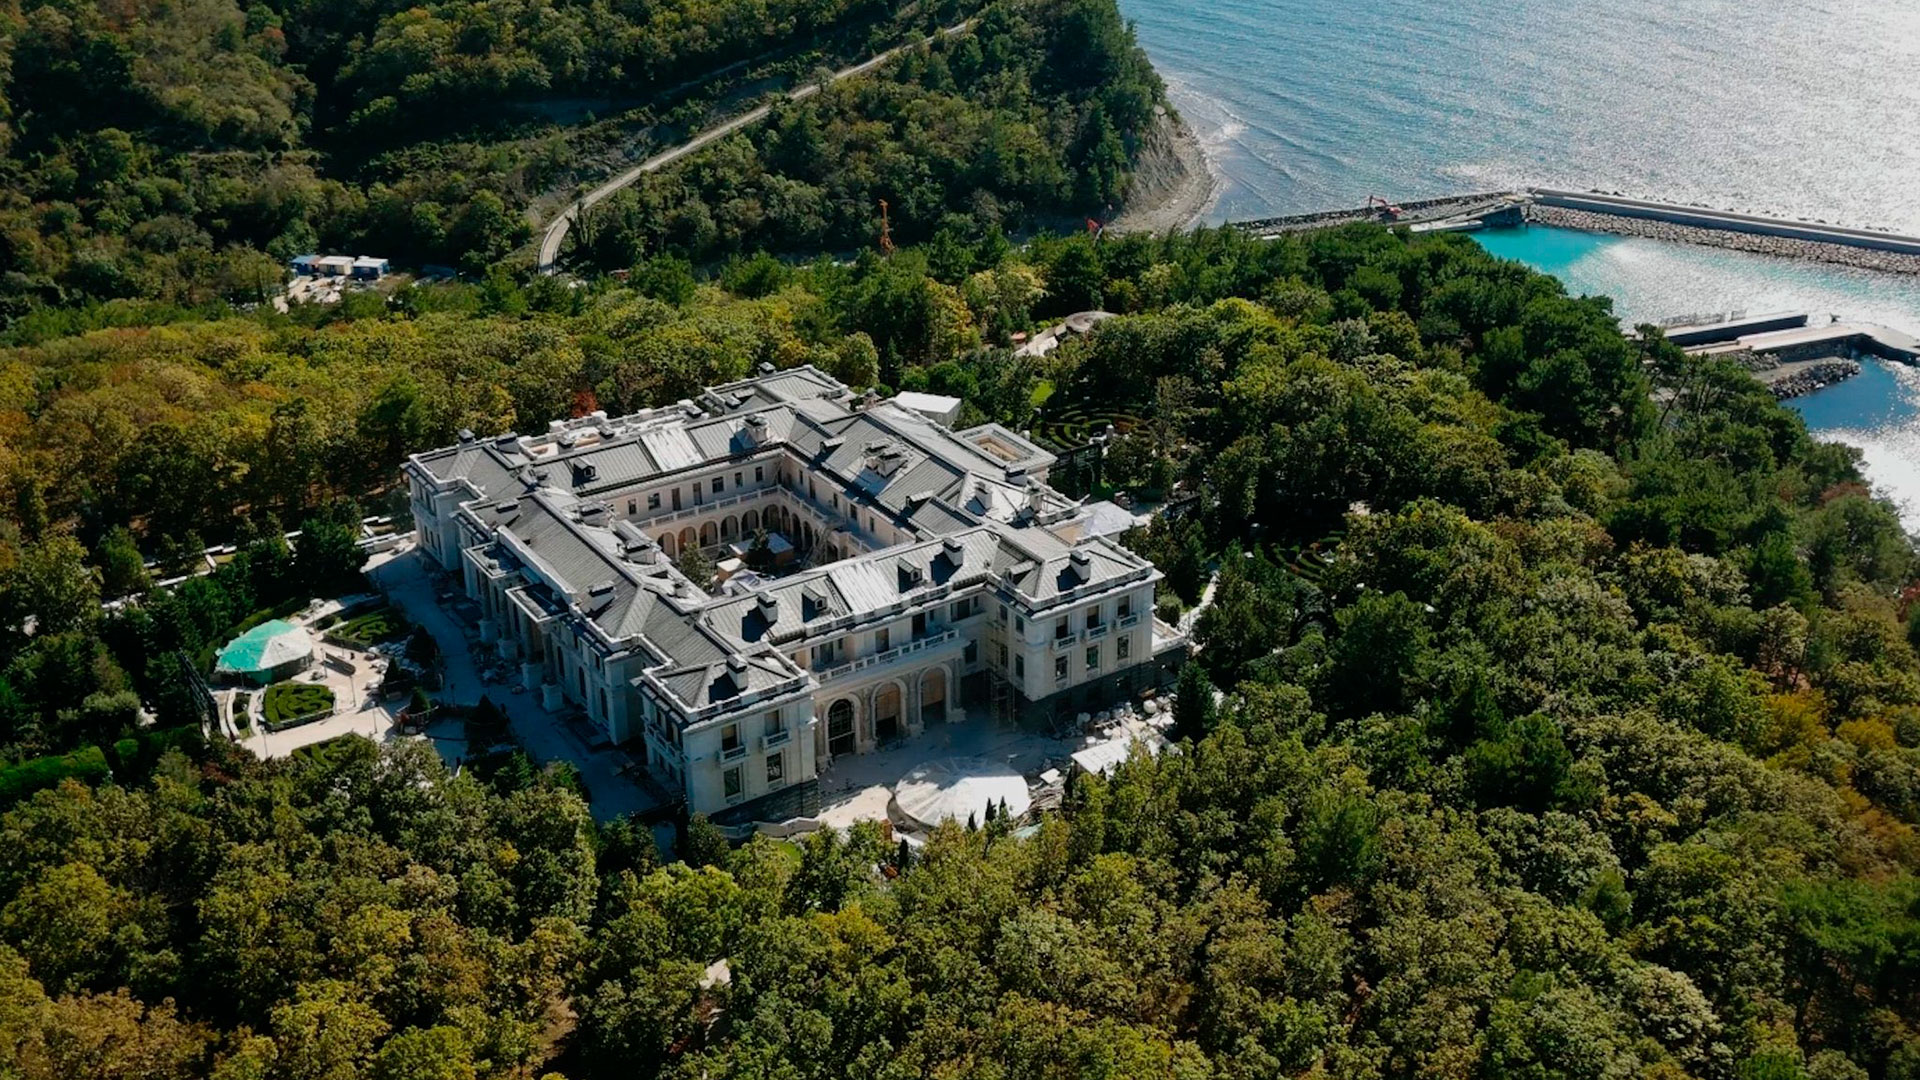 El fastuoso palacio, construido sobre el Mar Negro, que el disidente Navalny asegura fue construido para Vladimir Putin por "sus amigos".